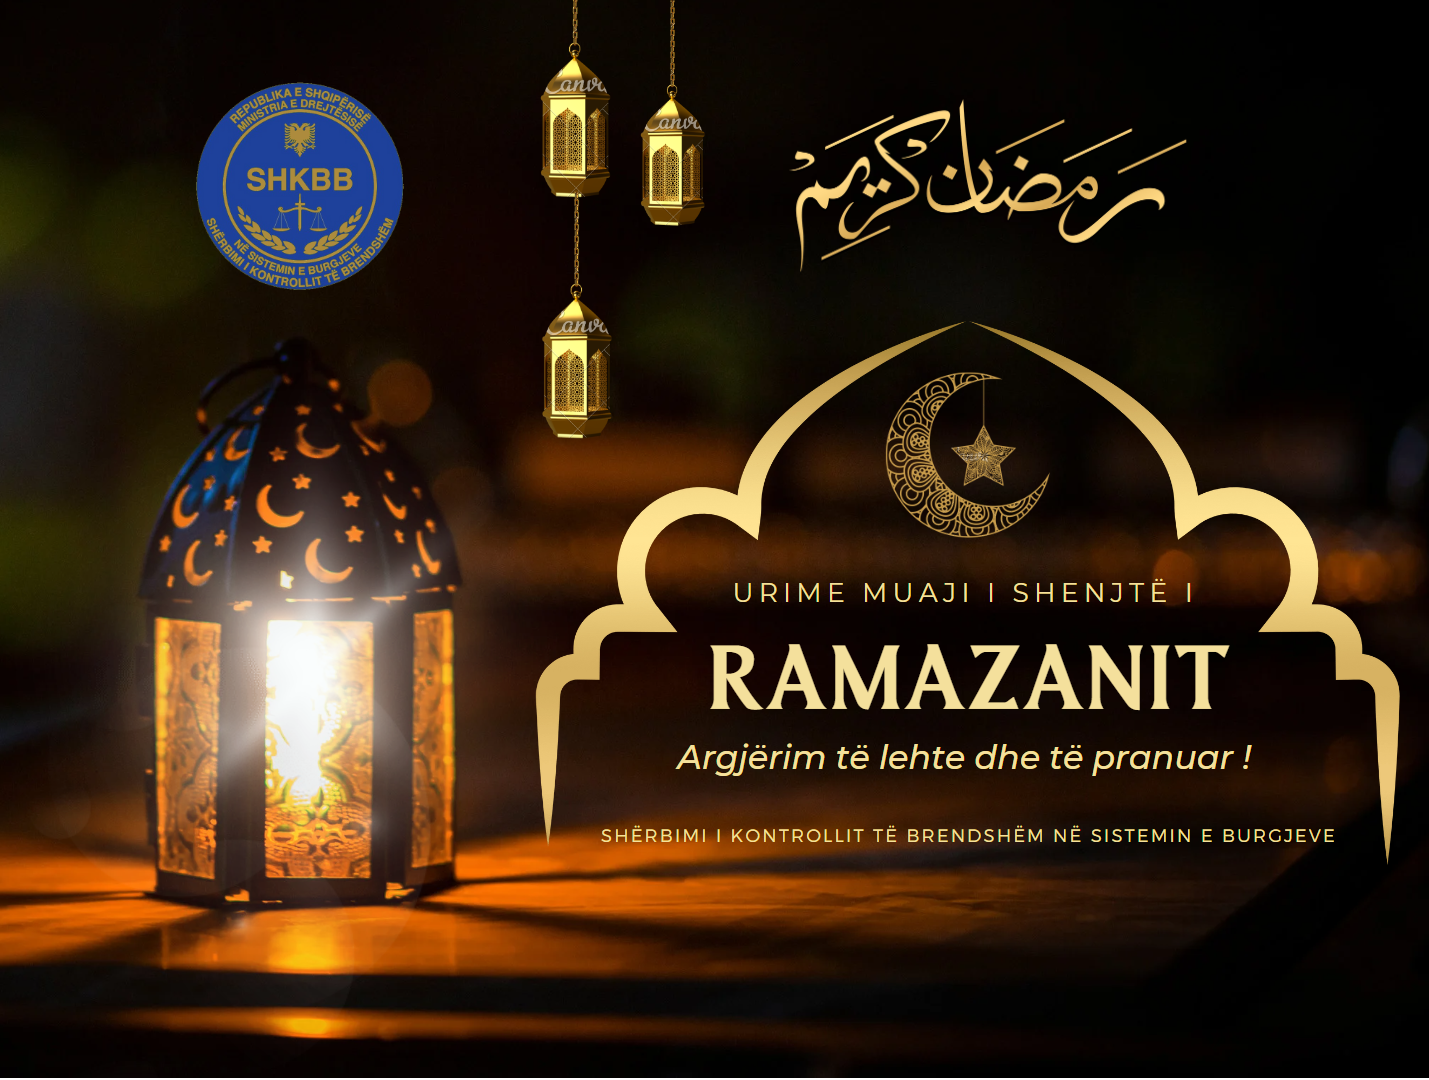 Urime muaji i shenjte i Ramazanit !